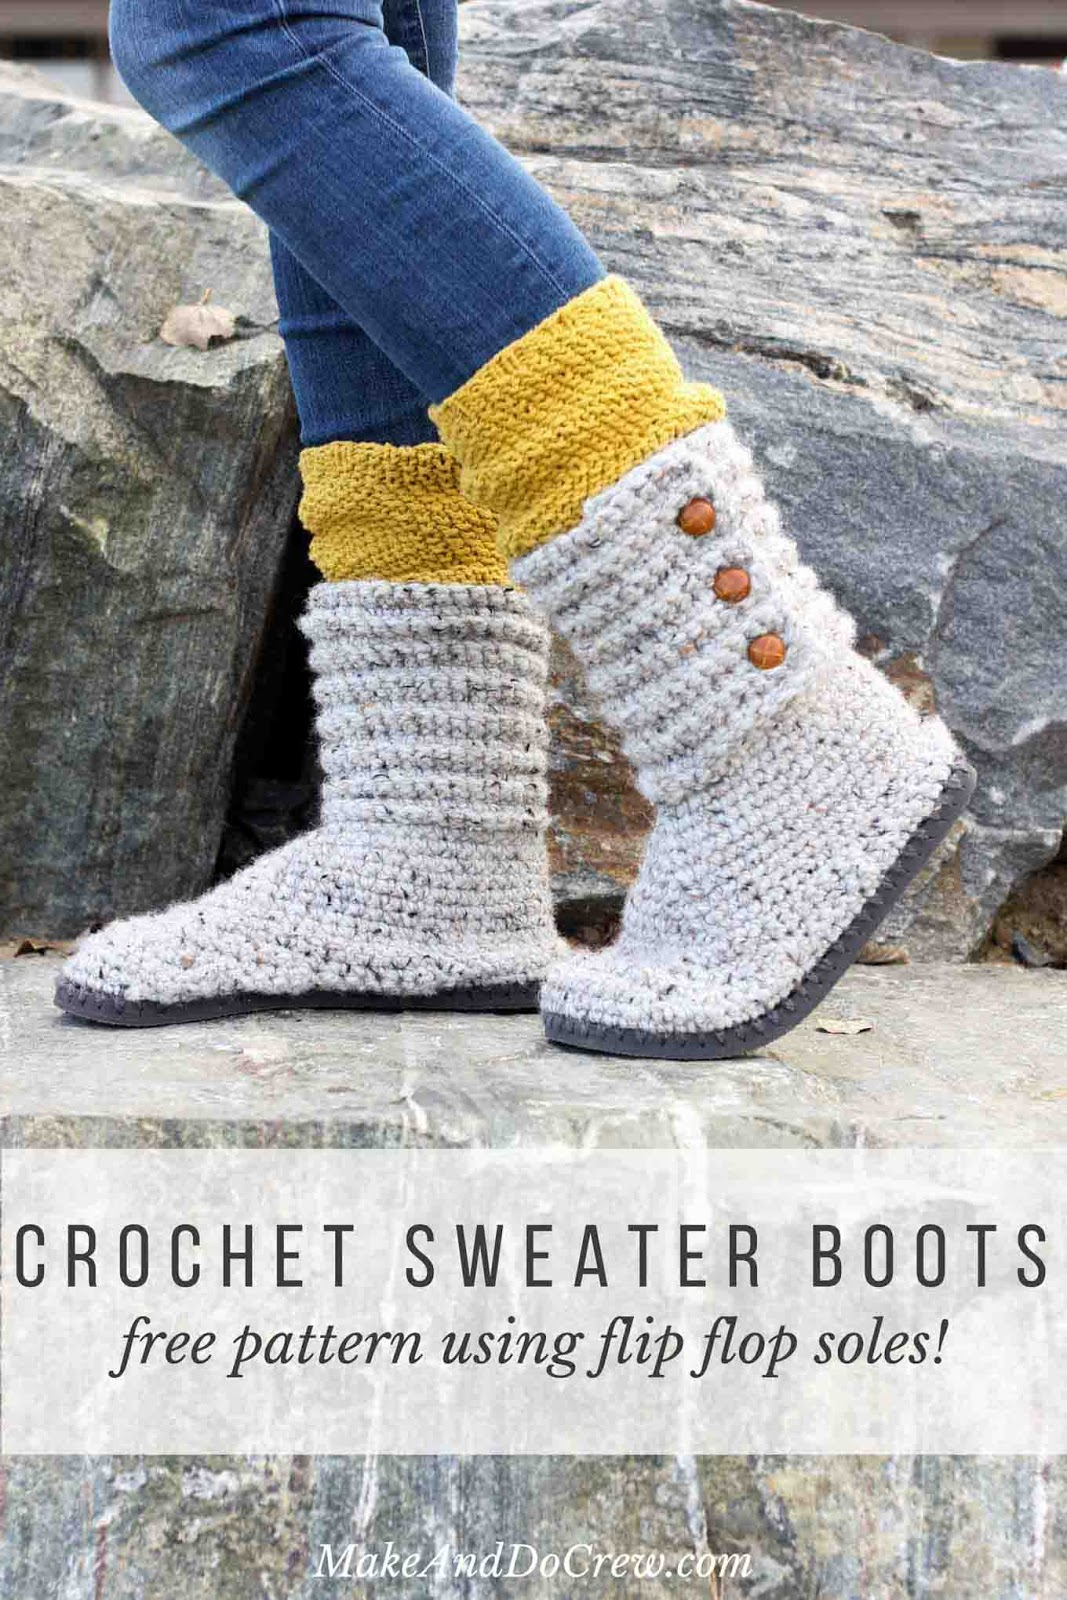 Crochet Slipper Boots Free Pattern Free Crochet Patterns Cats Rockin Crochet